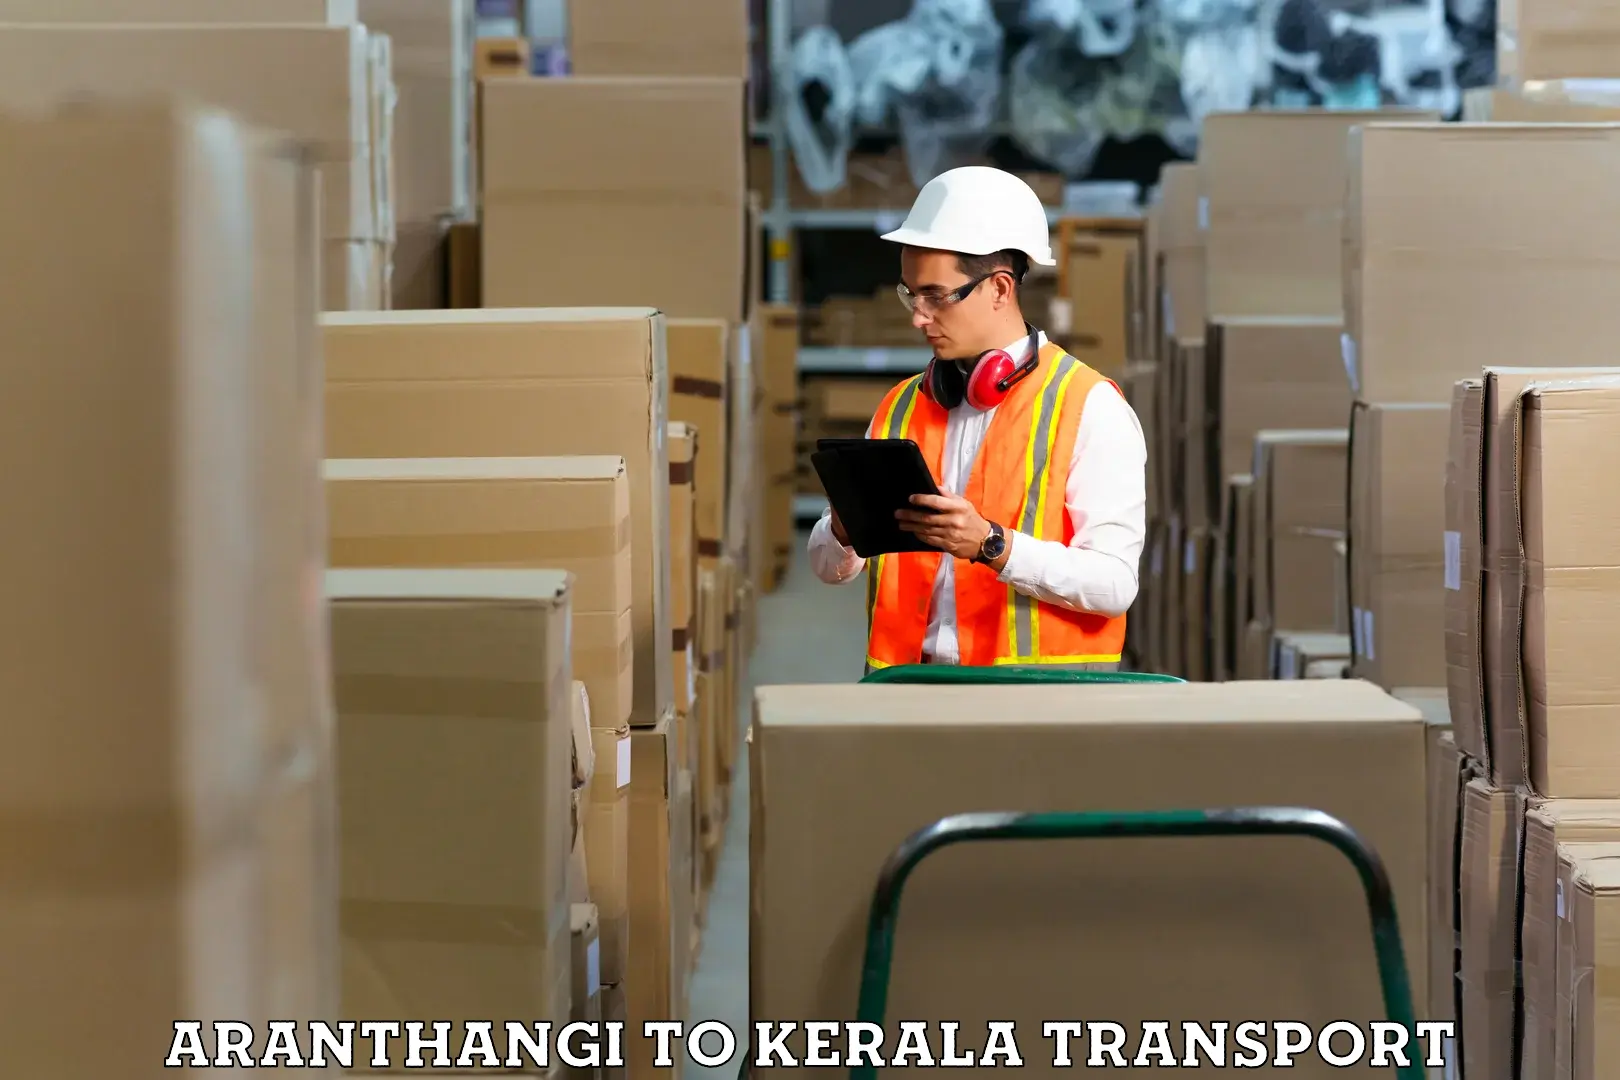 Furniture transport service Aranthangi to Munnar